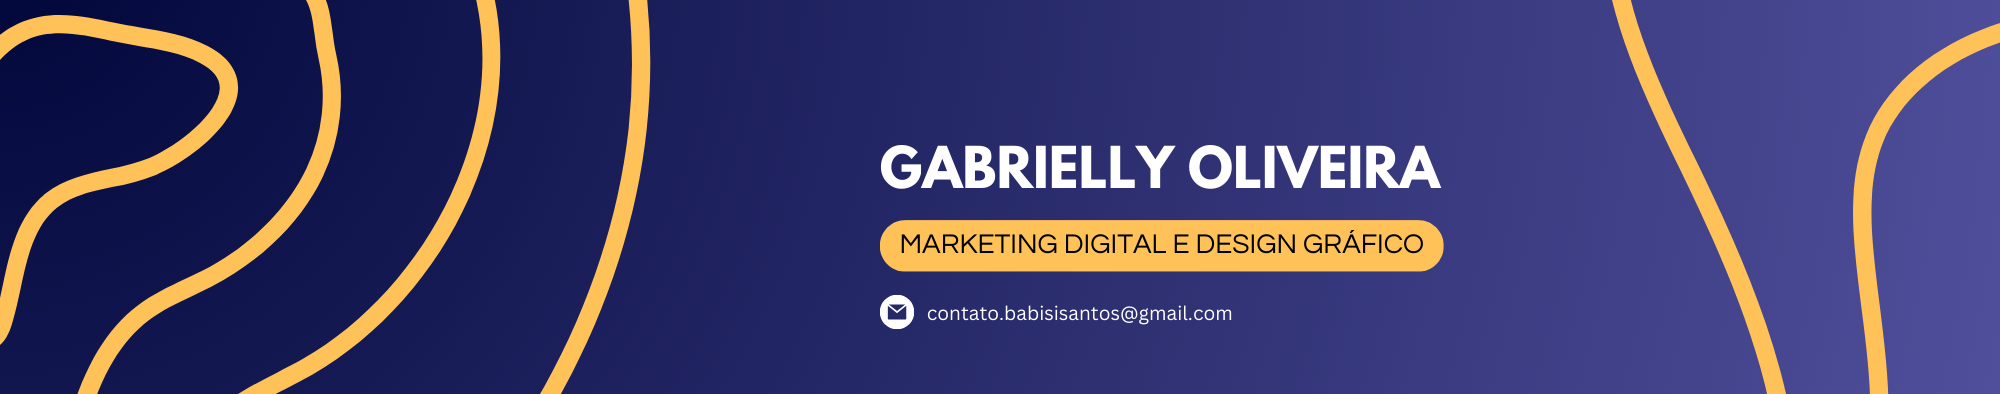 Gabrielly Oliveiras profilbanner